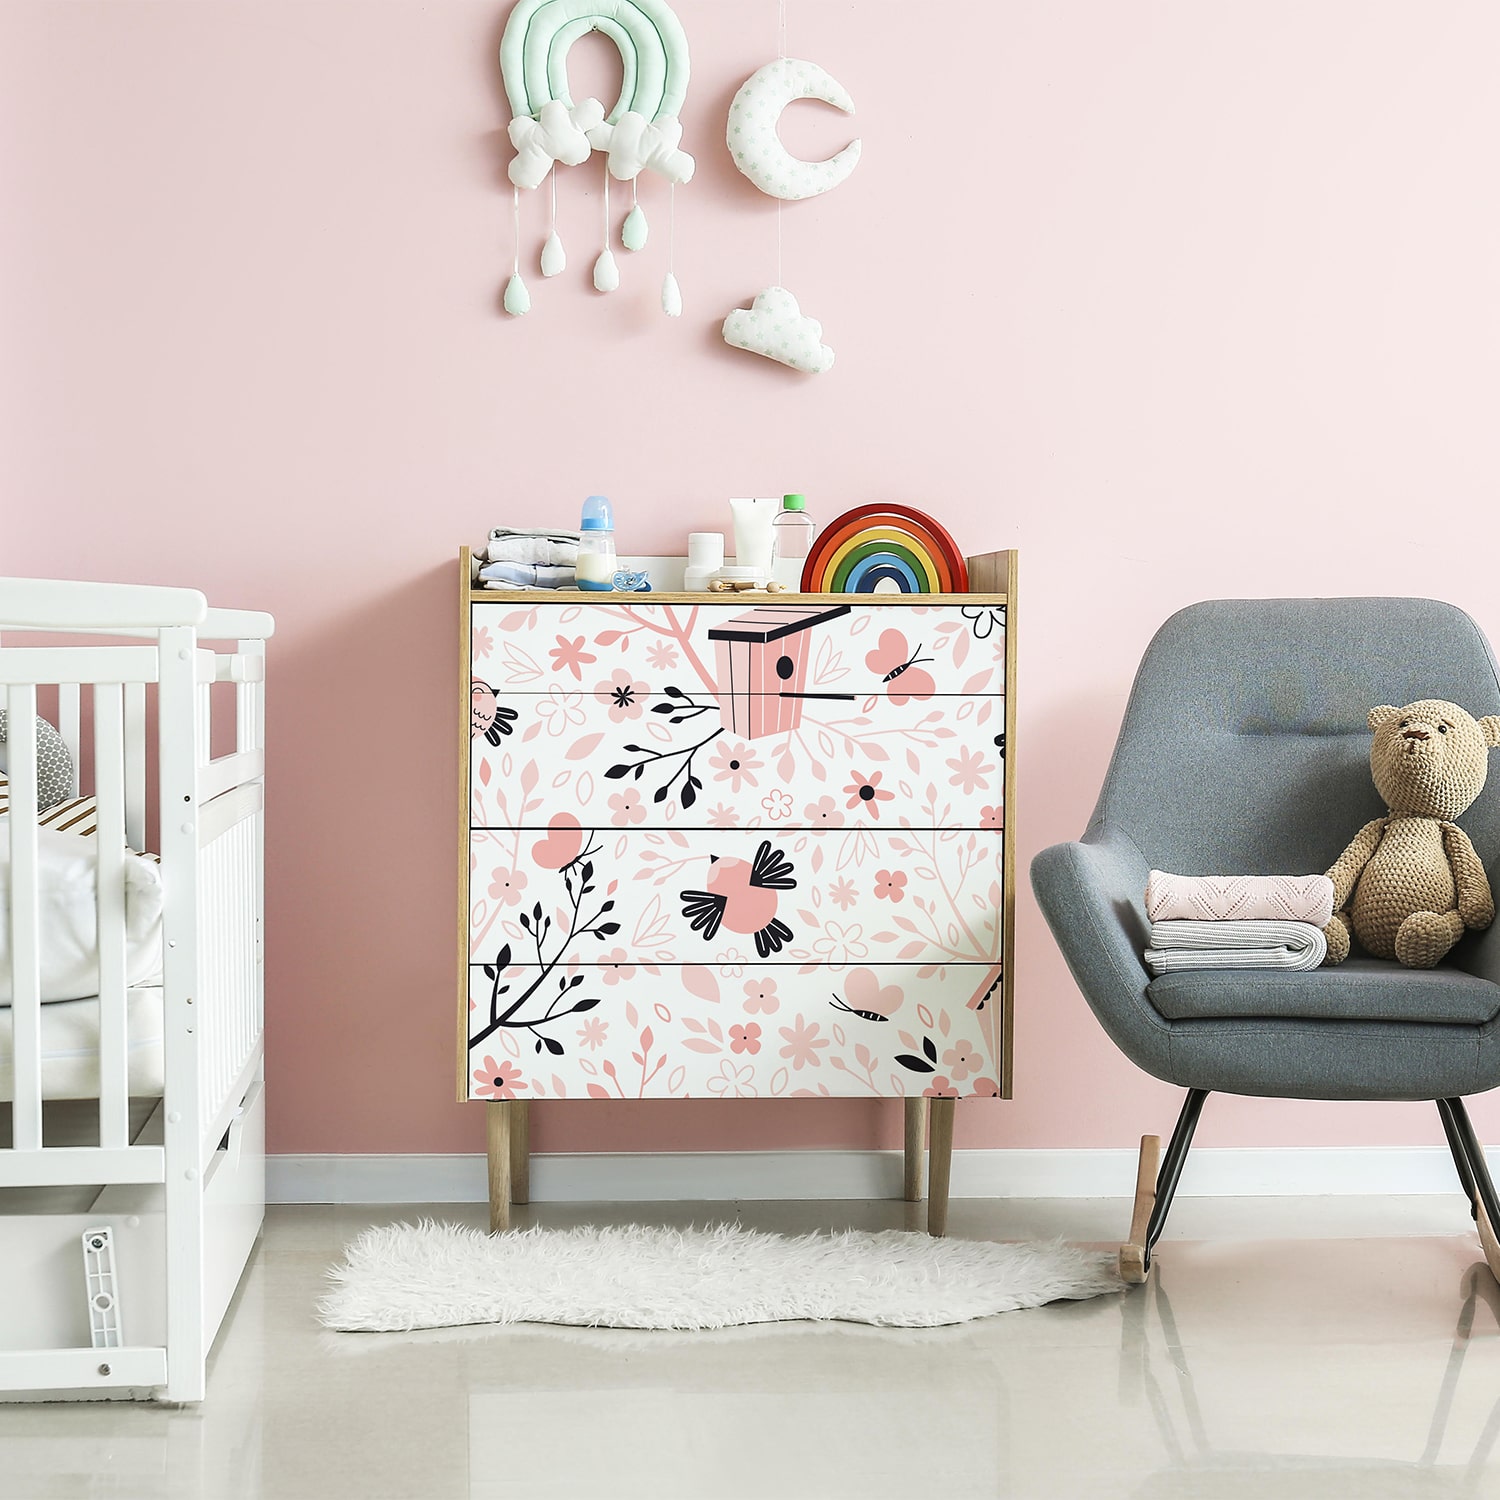 PP73-meuble-papier-peint-adhesif-decoratif-revetement-vinyle-motifs-arbre-à-oiseau-renovation-meuble-mur-min